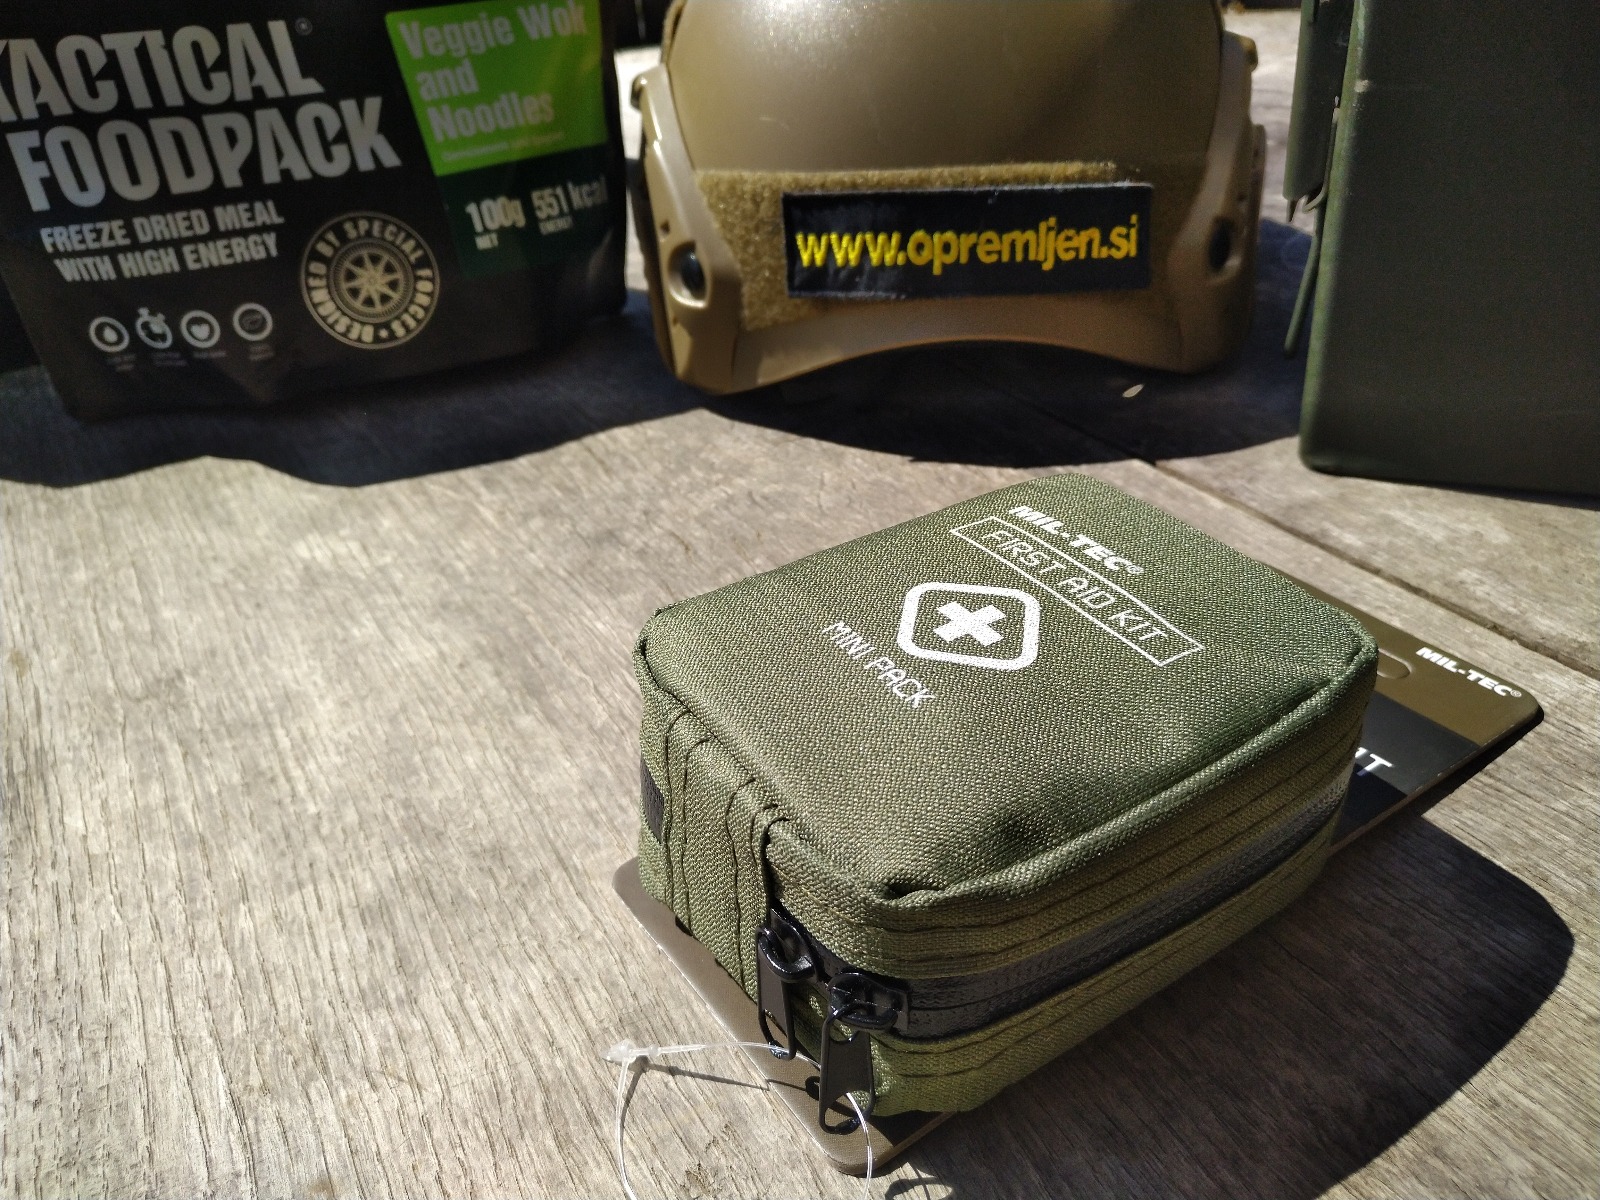 B33 army shop, prva pomoč, torbica prva pomoč, prva pomoč torbica okoli pasu, prenosna prva pomoč, MILTEC, MIL-TEC, B33 army shop, Army shop, Trgovina z vojaško opremo, vojaška trgovina